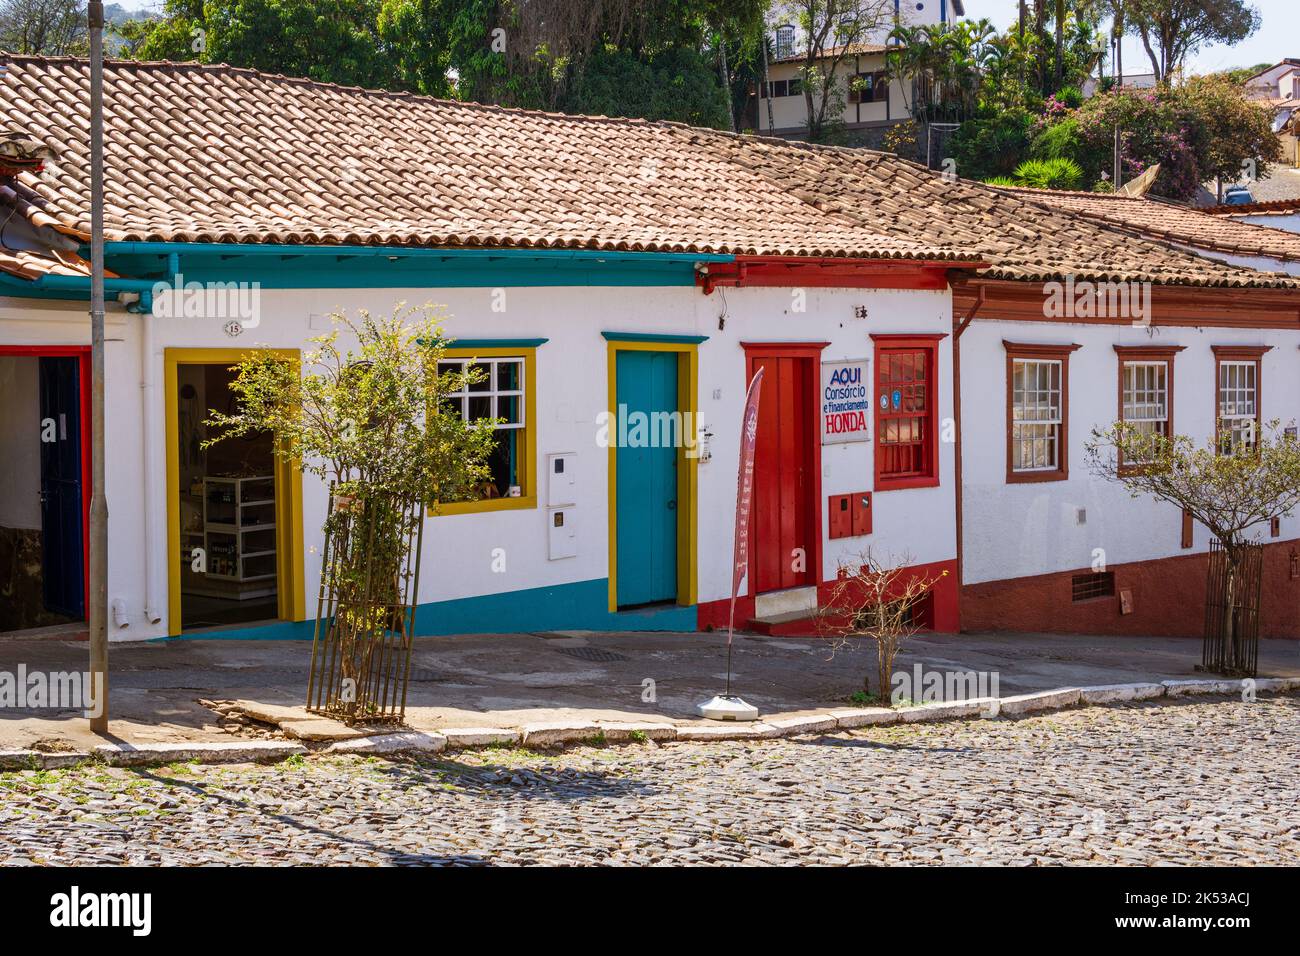 Edifici coloniali con porte in legno rosso e teal a Sabará, Minas Gerais, Brasile. Foto Stock